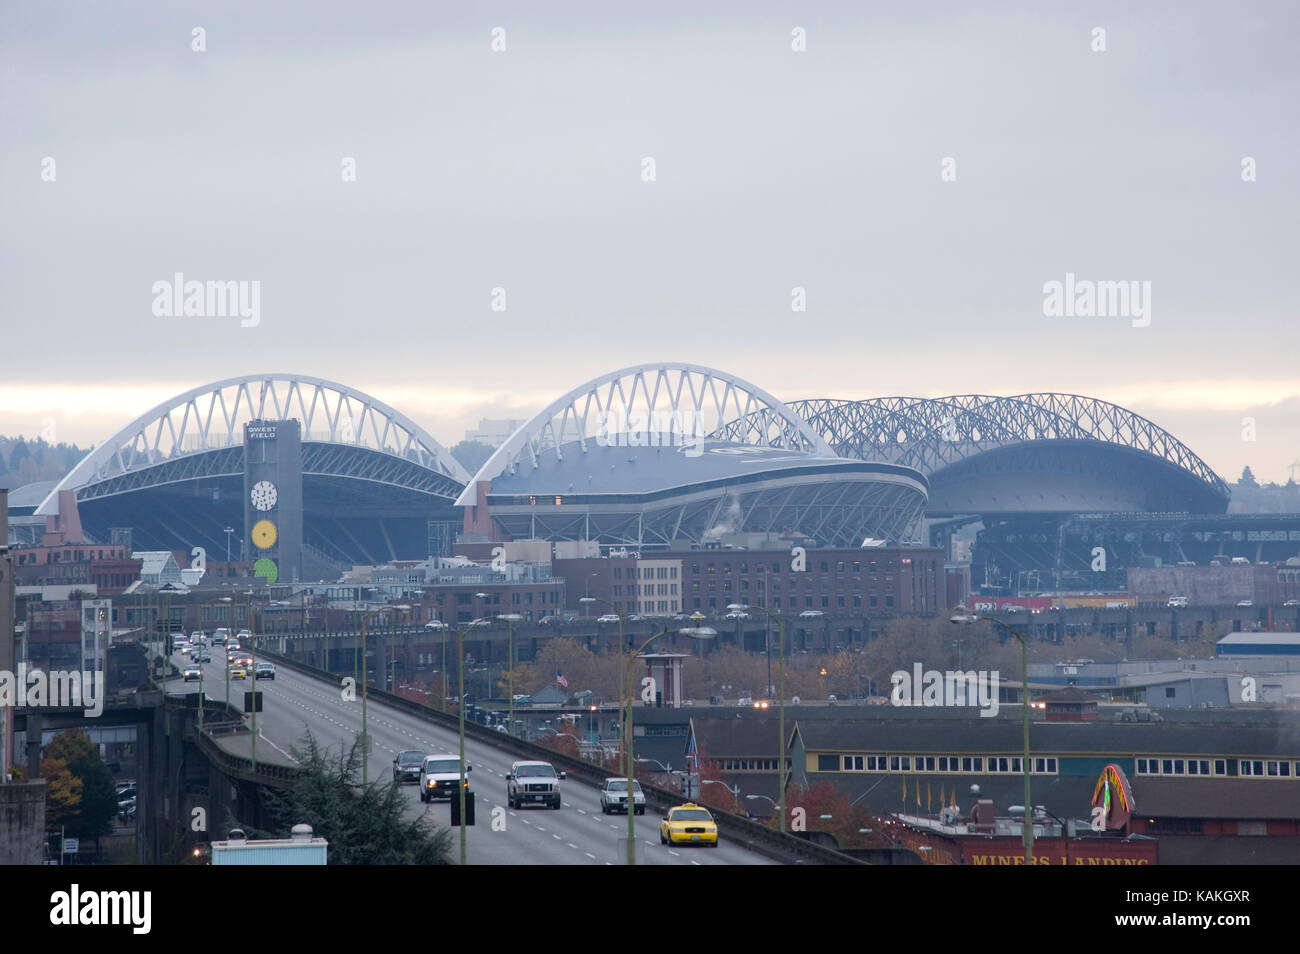 CenturyLink Field in Seattle Stock Photo